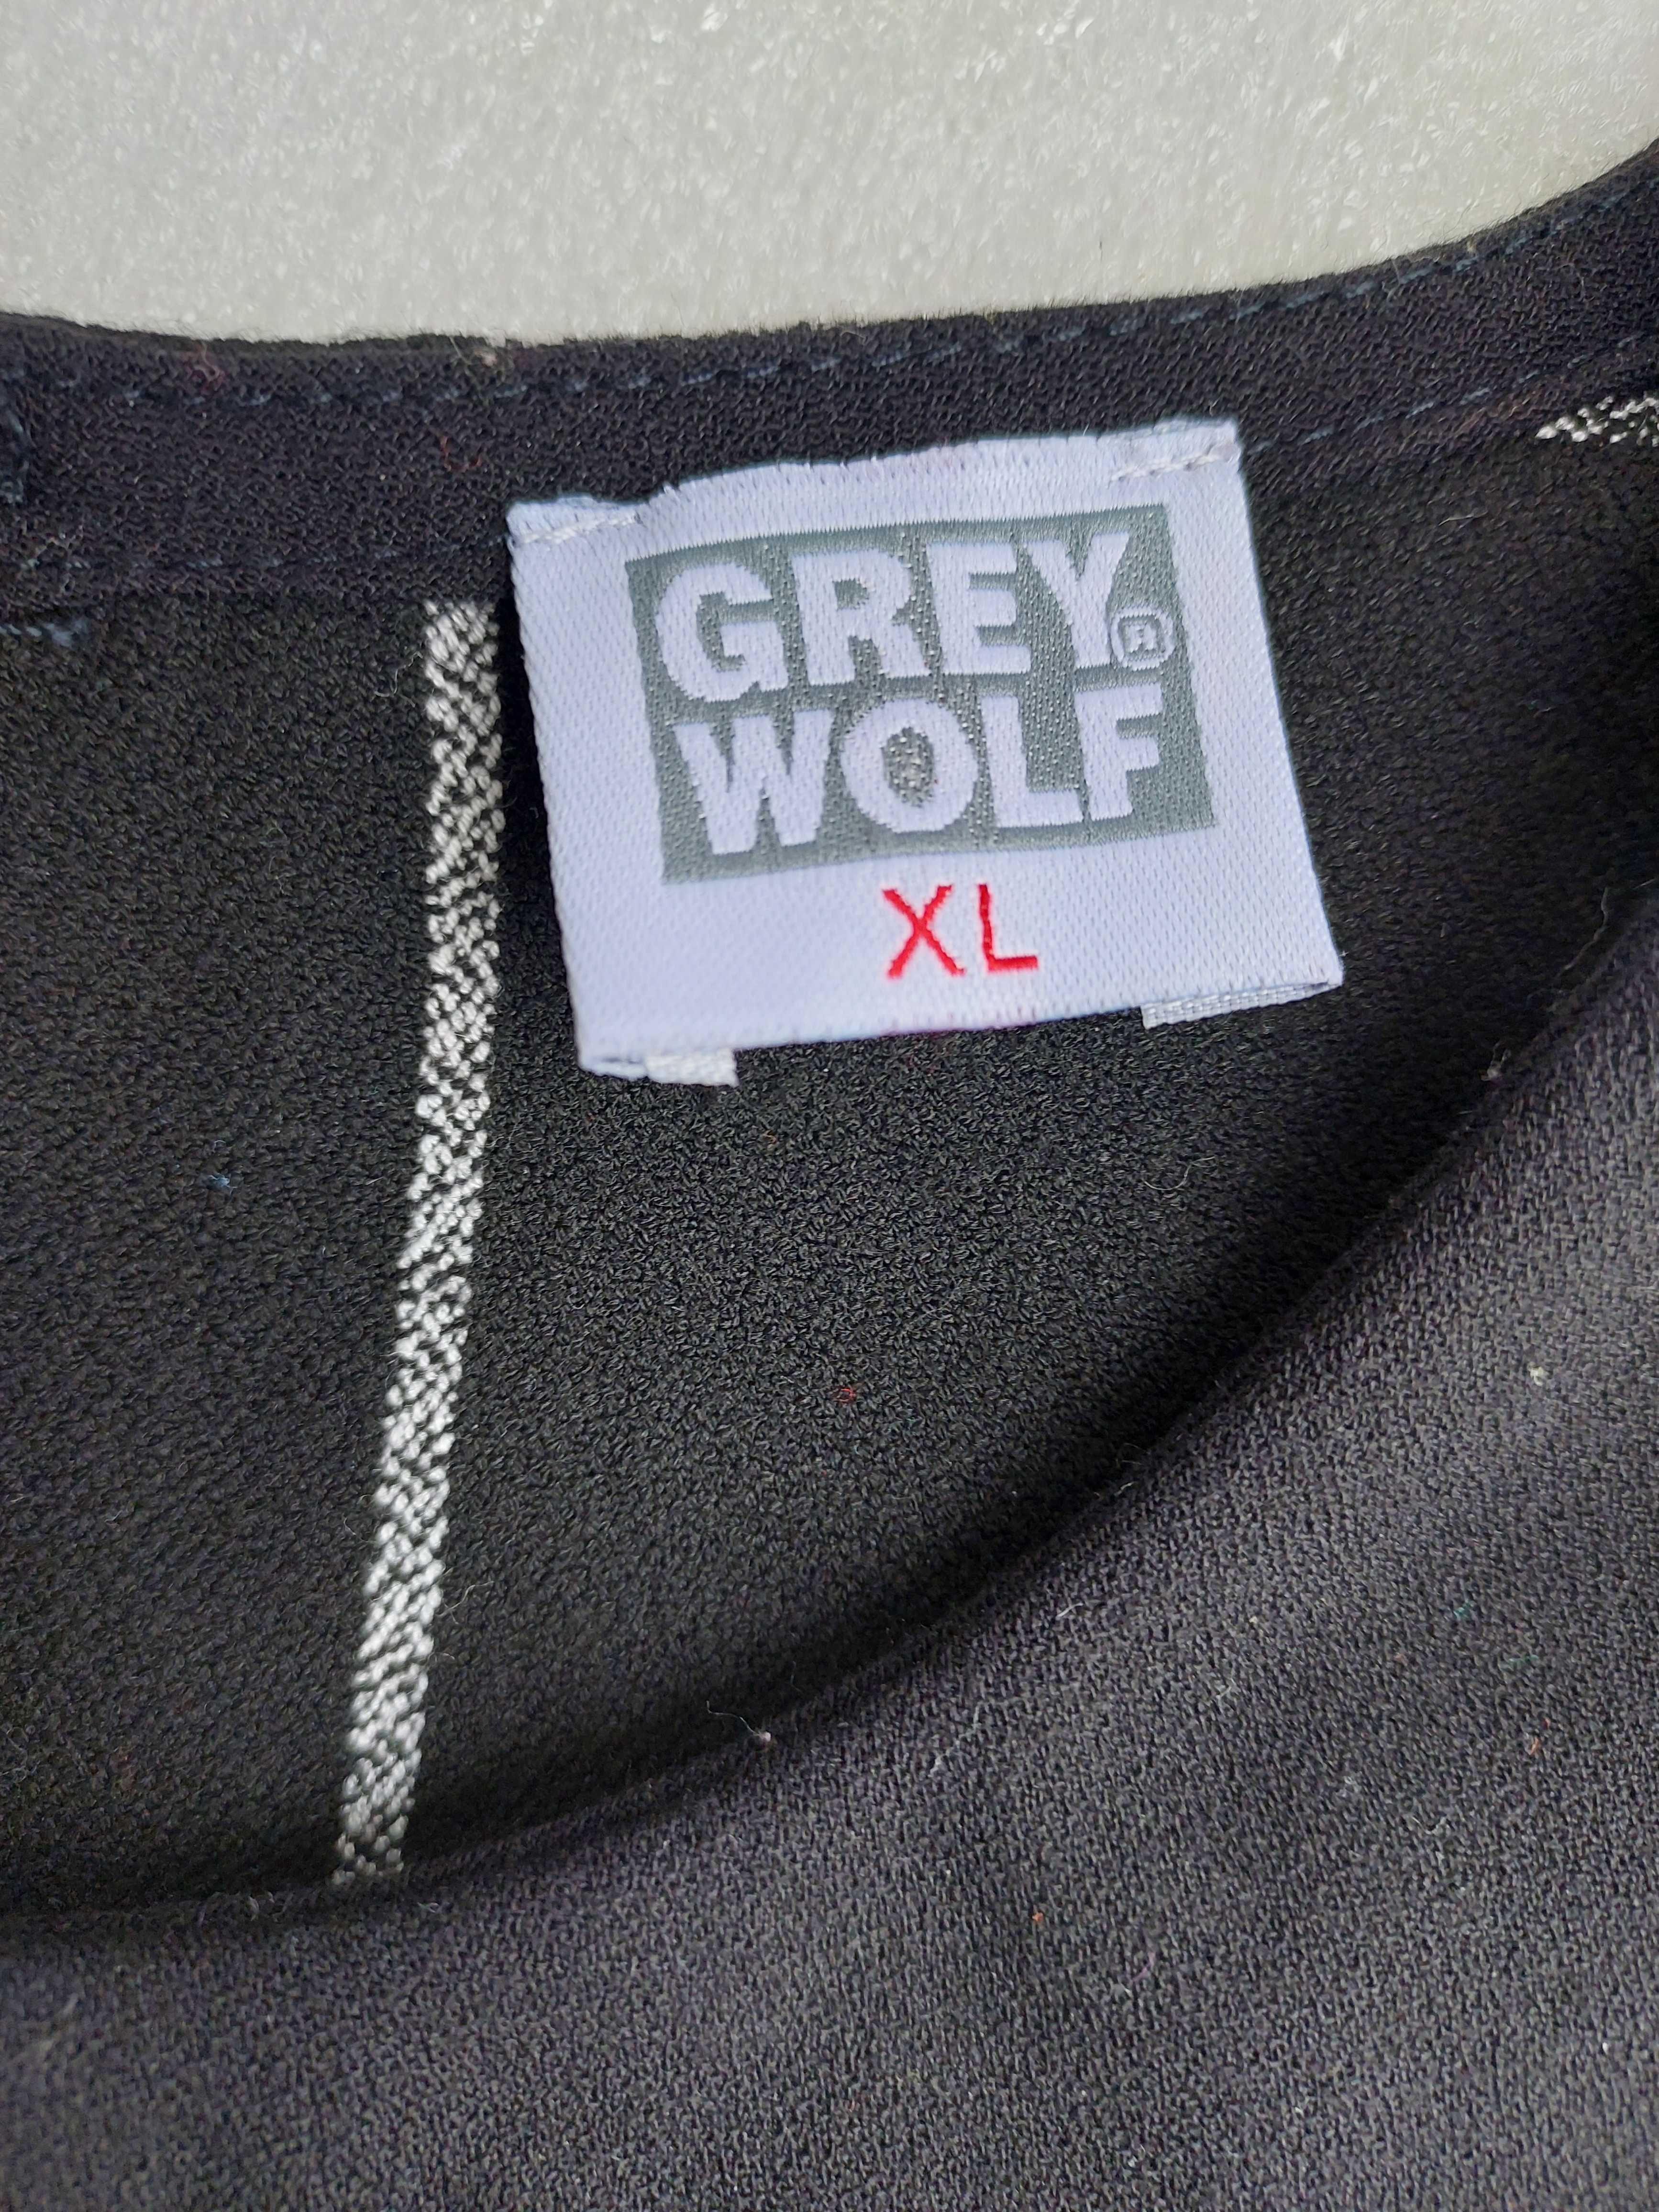 Sukienka GREY WOLF czarna w kratkę   Rozmiar małe XL